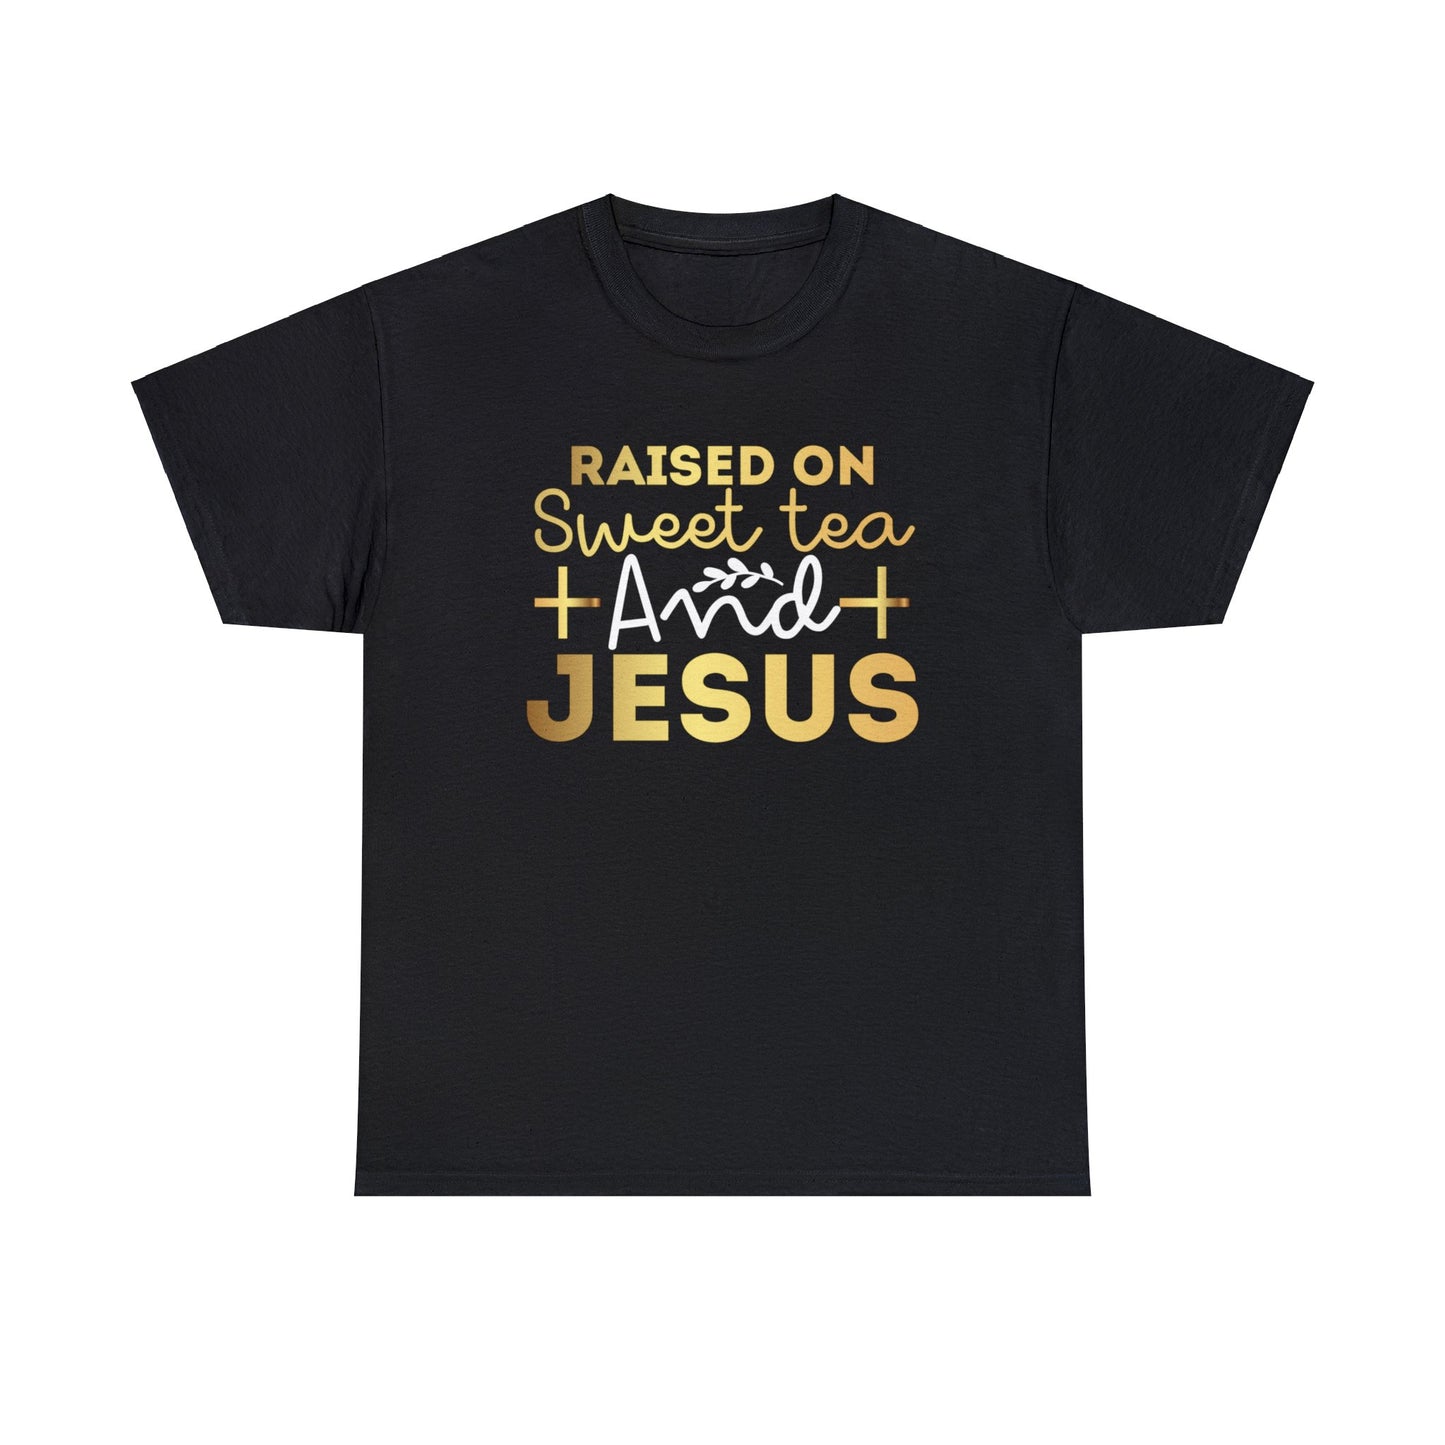 Raised On Sweet Tea and Jesus Shirt, Christian Shirt, Religious Shirt, Faith Tee (Faith-49)